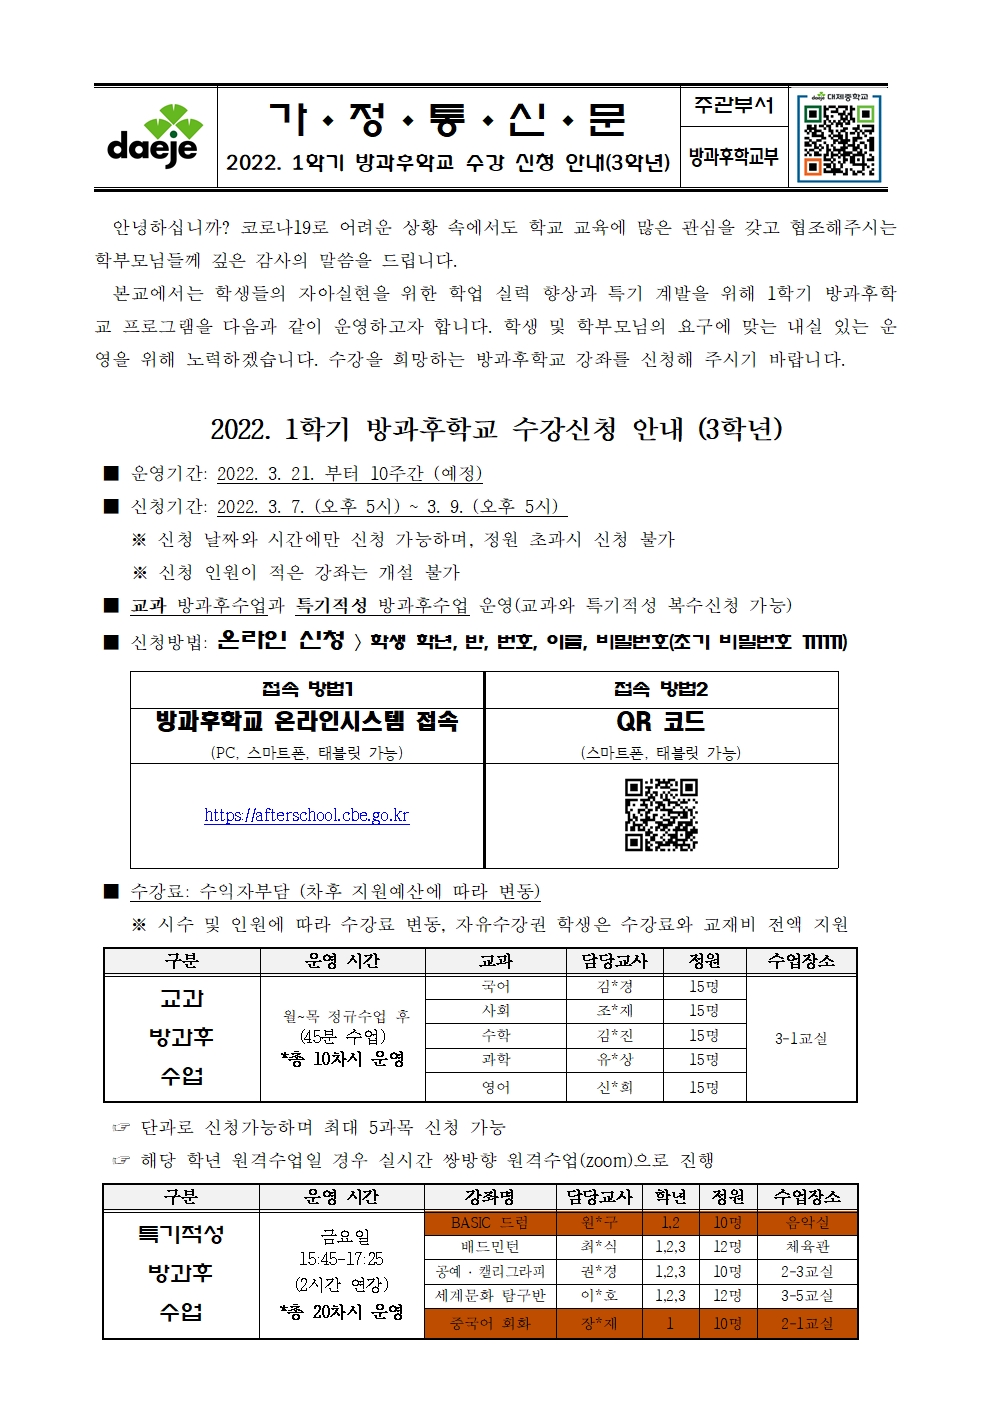 [가정통신문] 2022학년도 1학기 방과후학교 수강 신청 안내(3학년)001